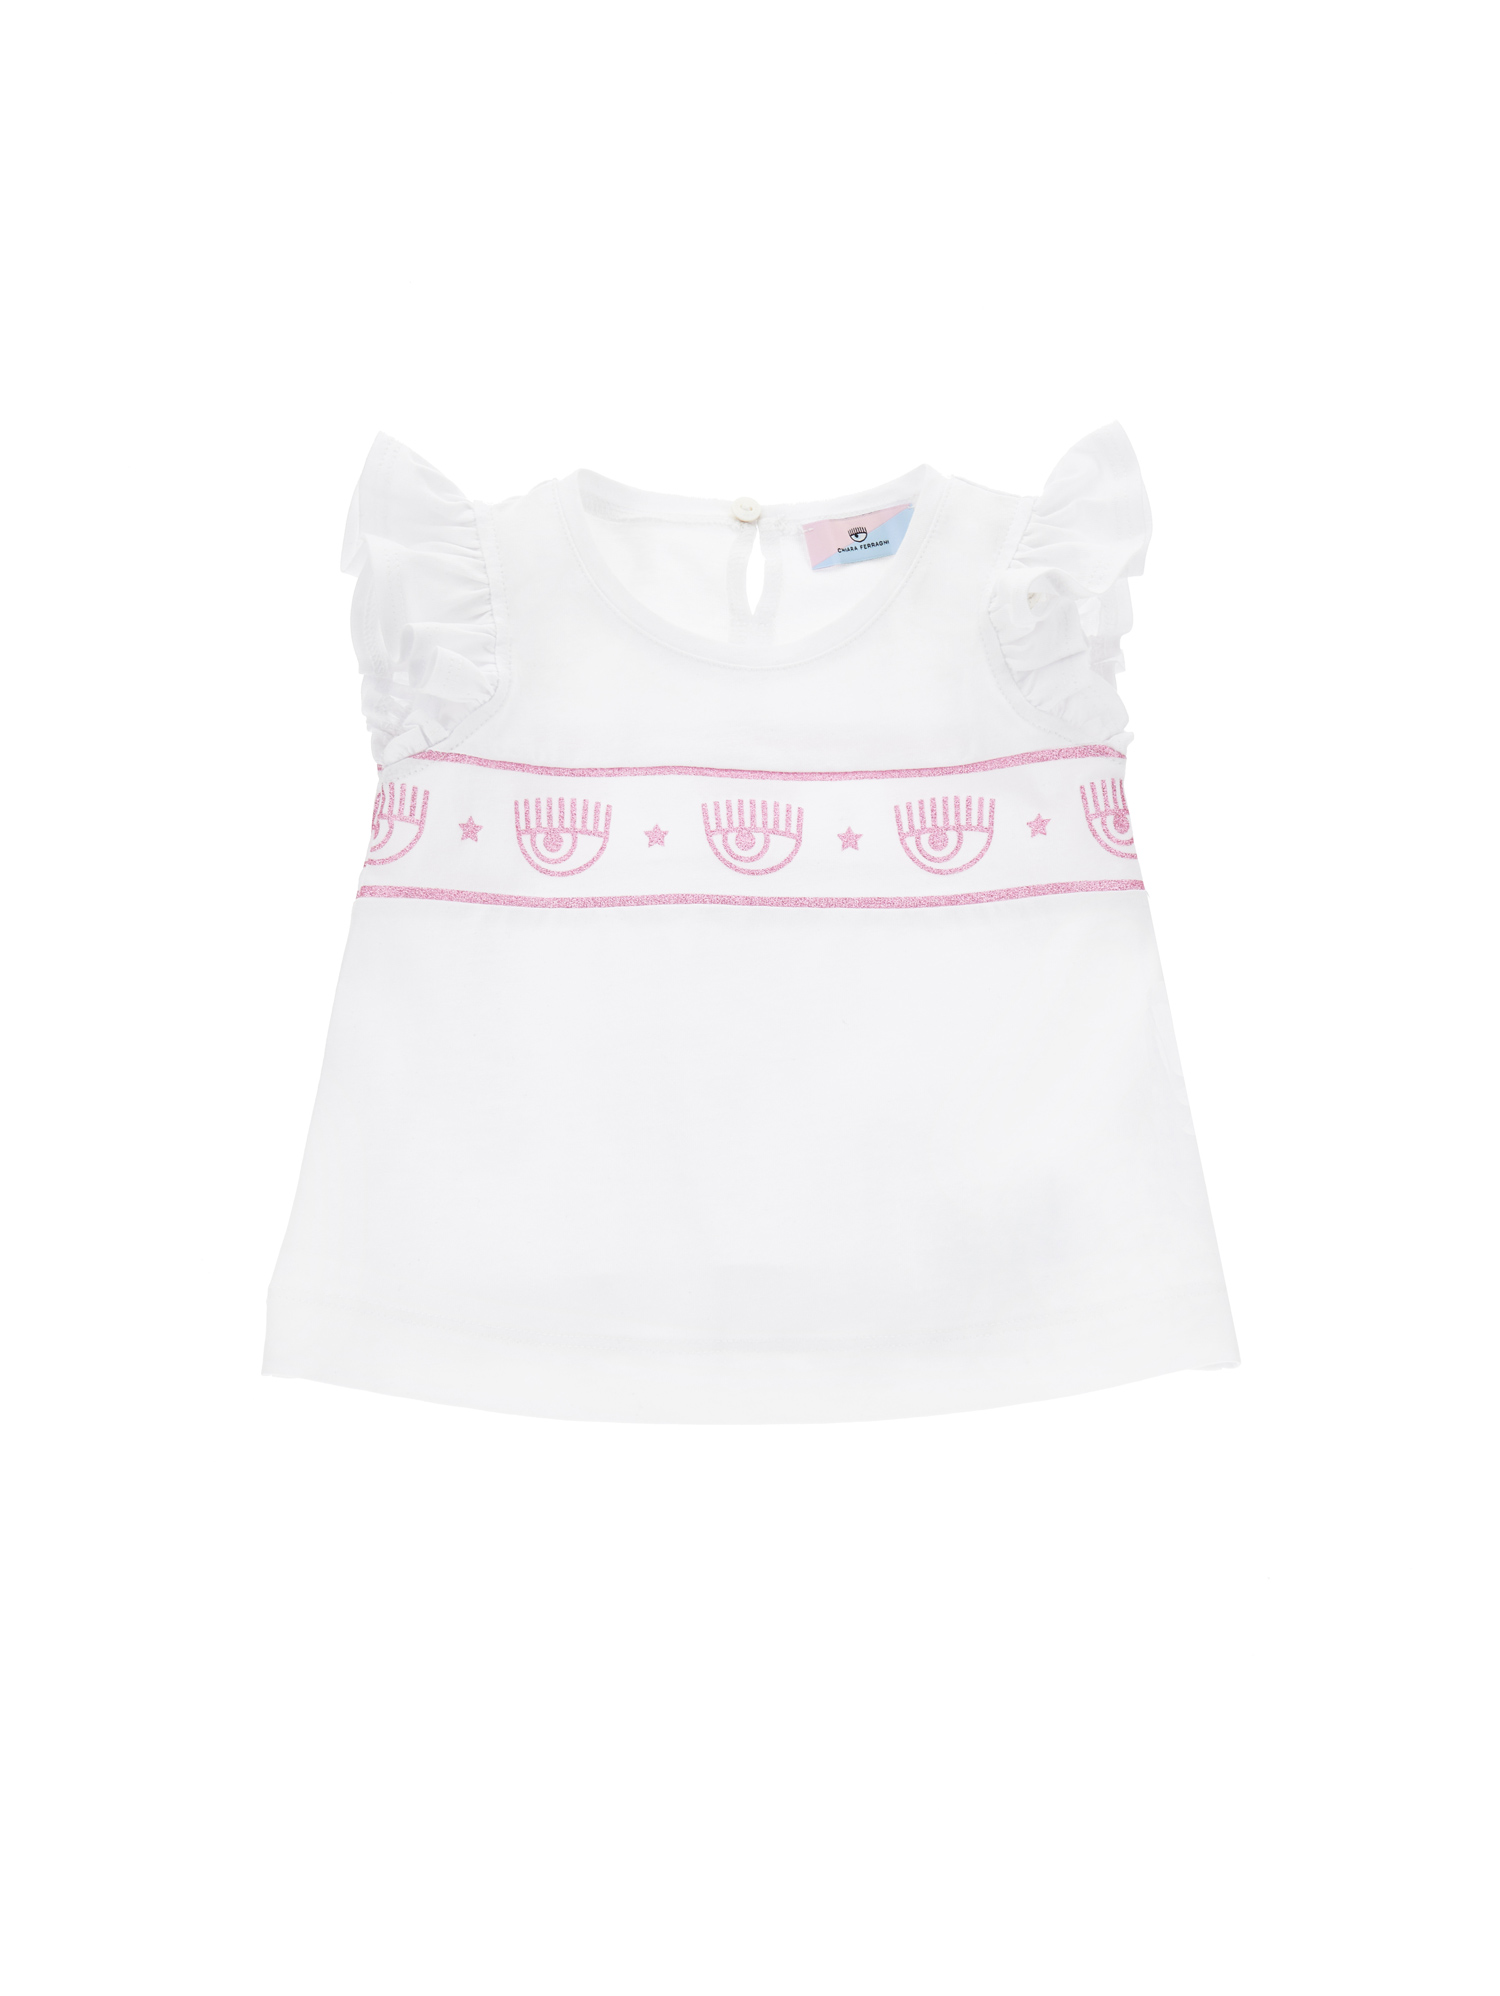 Chiara Ferragni Kids'   Maxilogomania Jersey Tank Top In White + Rosa Fairytale